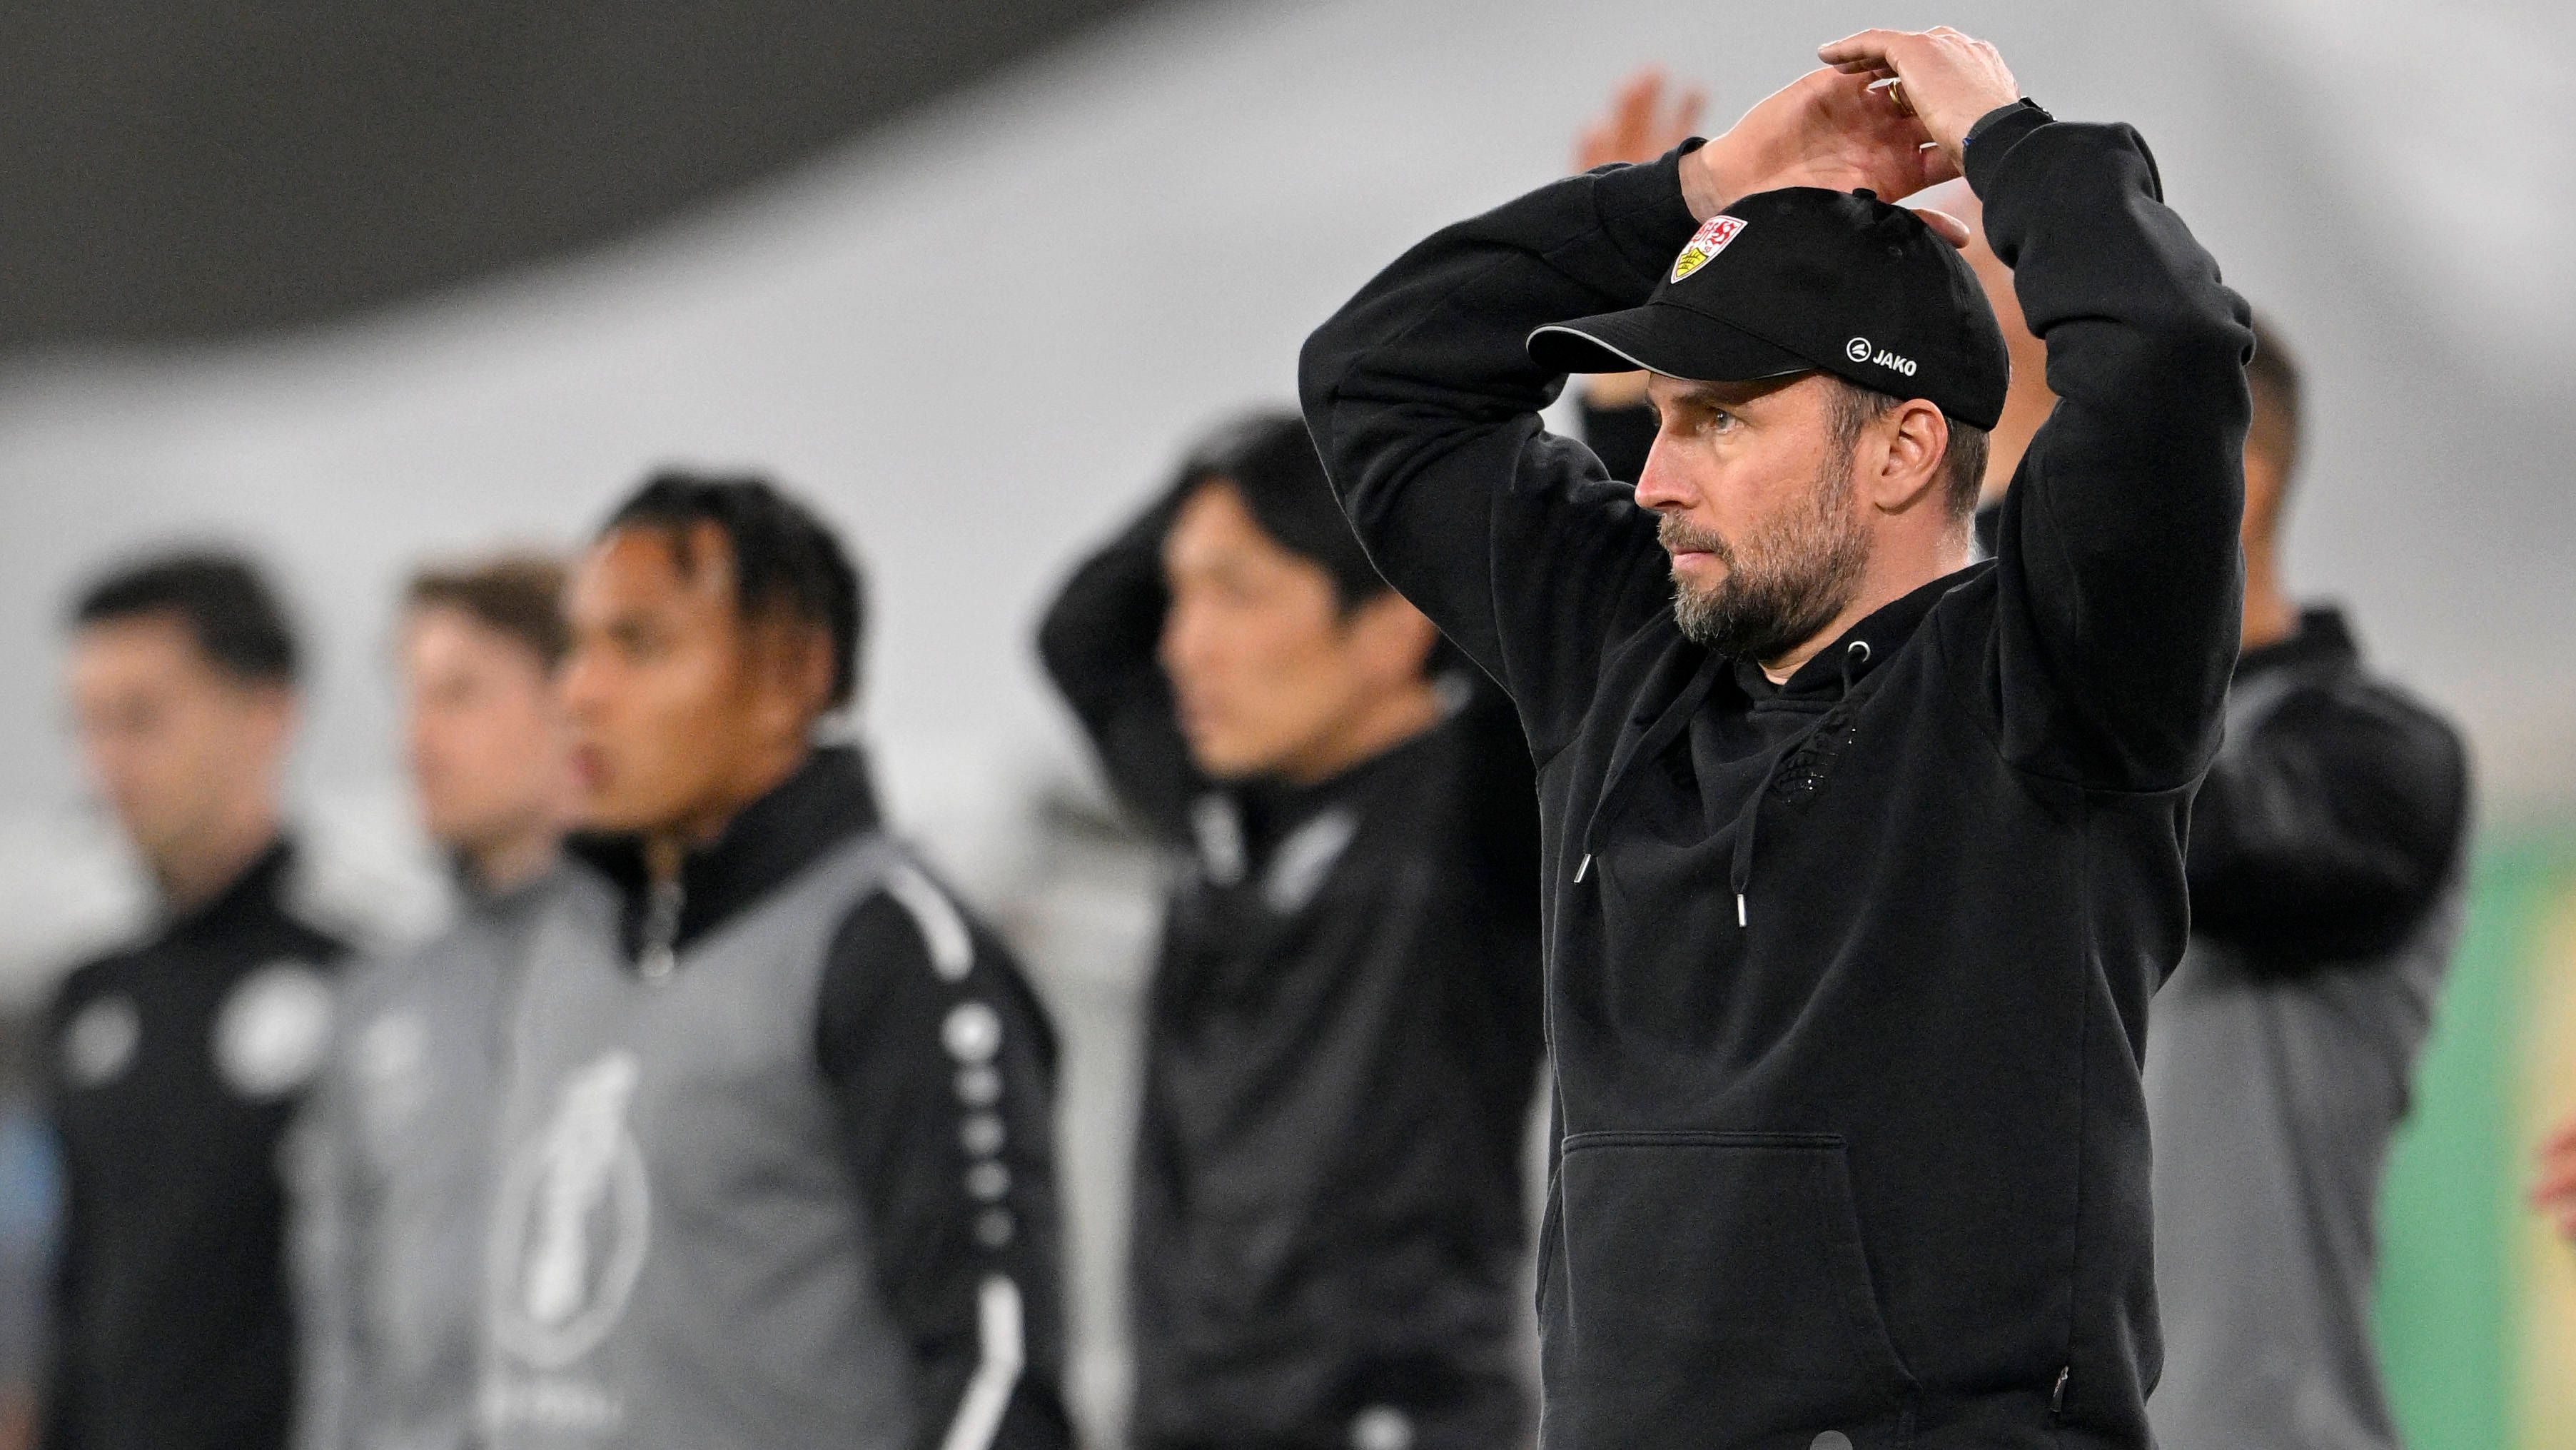 
                <strong>Stuttgart-Trainer Hoeneß kritisiert VAR-Entscheidung</strong><br>
                Für uns ist es schon schwer zu akzeptieren, wie sie entschieden wurde", kritisierte VfB-Trainer Sebastian Hoeneß die Entscheidung gegenüber der "ARD", auch wenn er sie als "tough und schwierig" bezeichnete. Bei "Sky" legte der 40-Jährige dann nochmal nach. Der Ex-Hoffenheim-Coach habe eine solche "Situation schon öfter gesehen", bei der die Entscheidung aber anders ausgefallen ist. Dennoch legte sich Hoeneß fest: "Für mich ist es ein Handspiel."
              